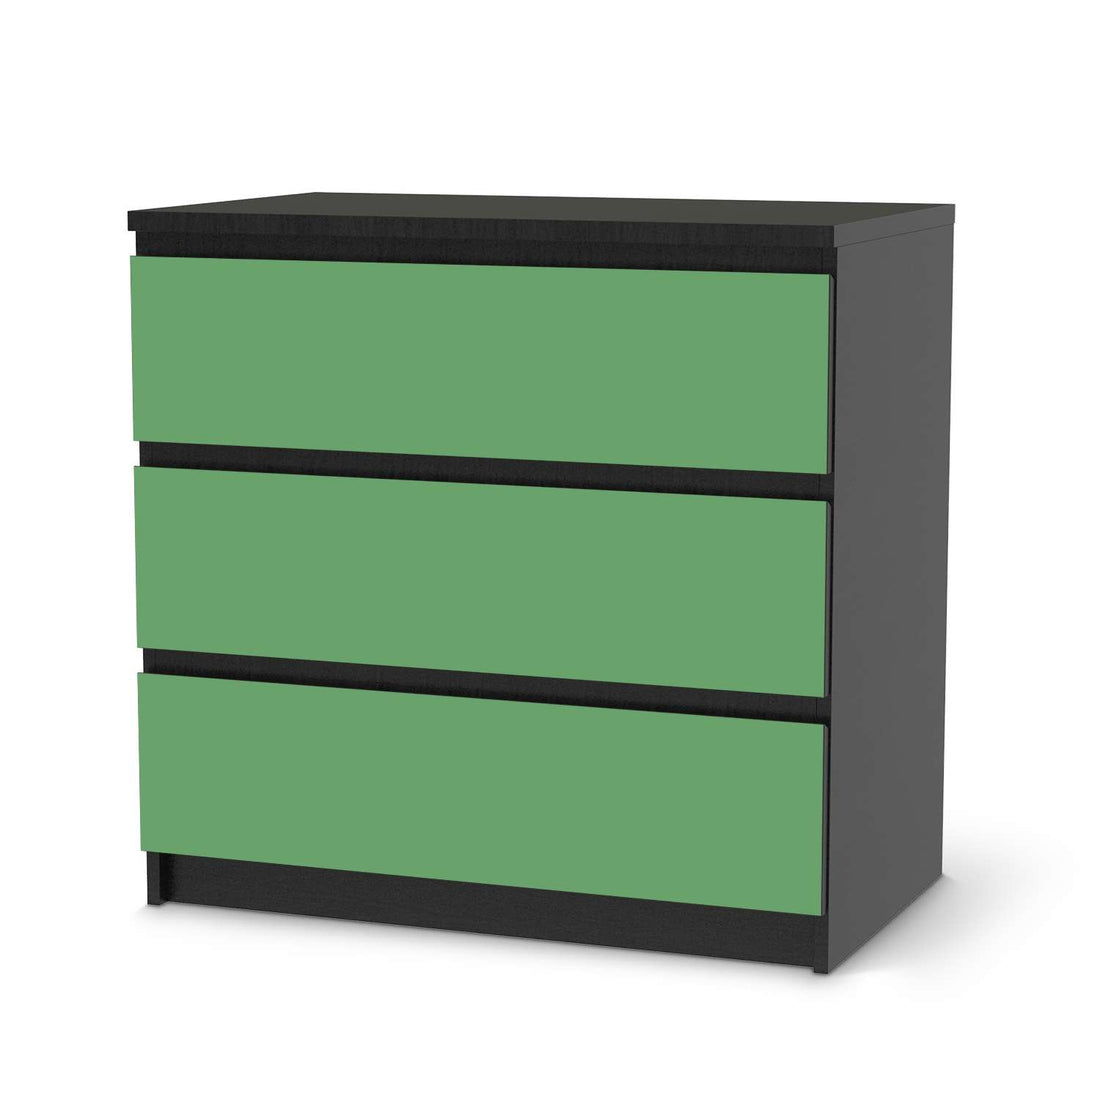 Klebefolie für Möbel Grün Light - IKEA Malm Kommode 3 Schubladen - schwarz